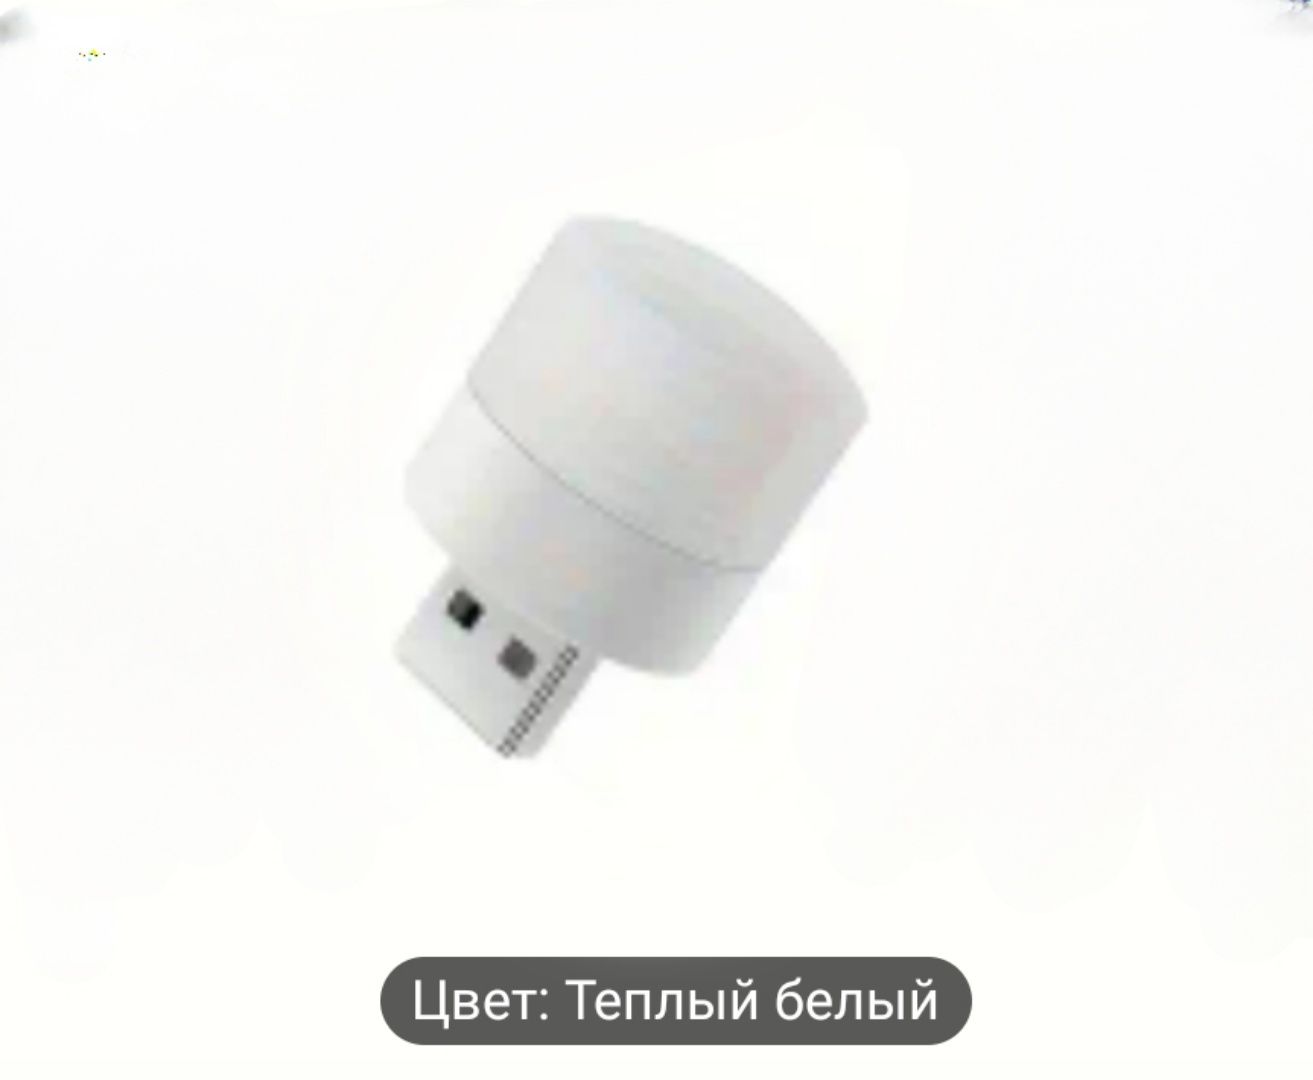 мини-USB-ночник, теплый белый светильник для защиты глаз, лампа для чт